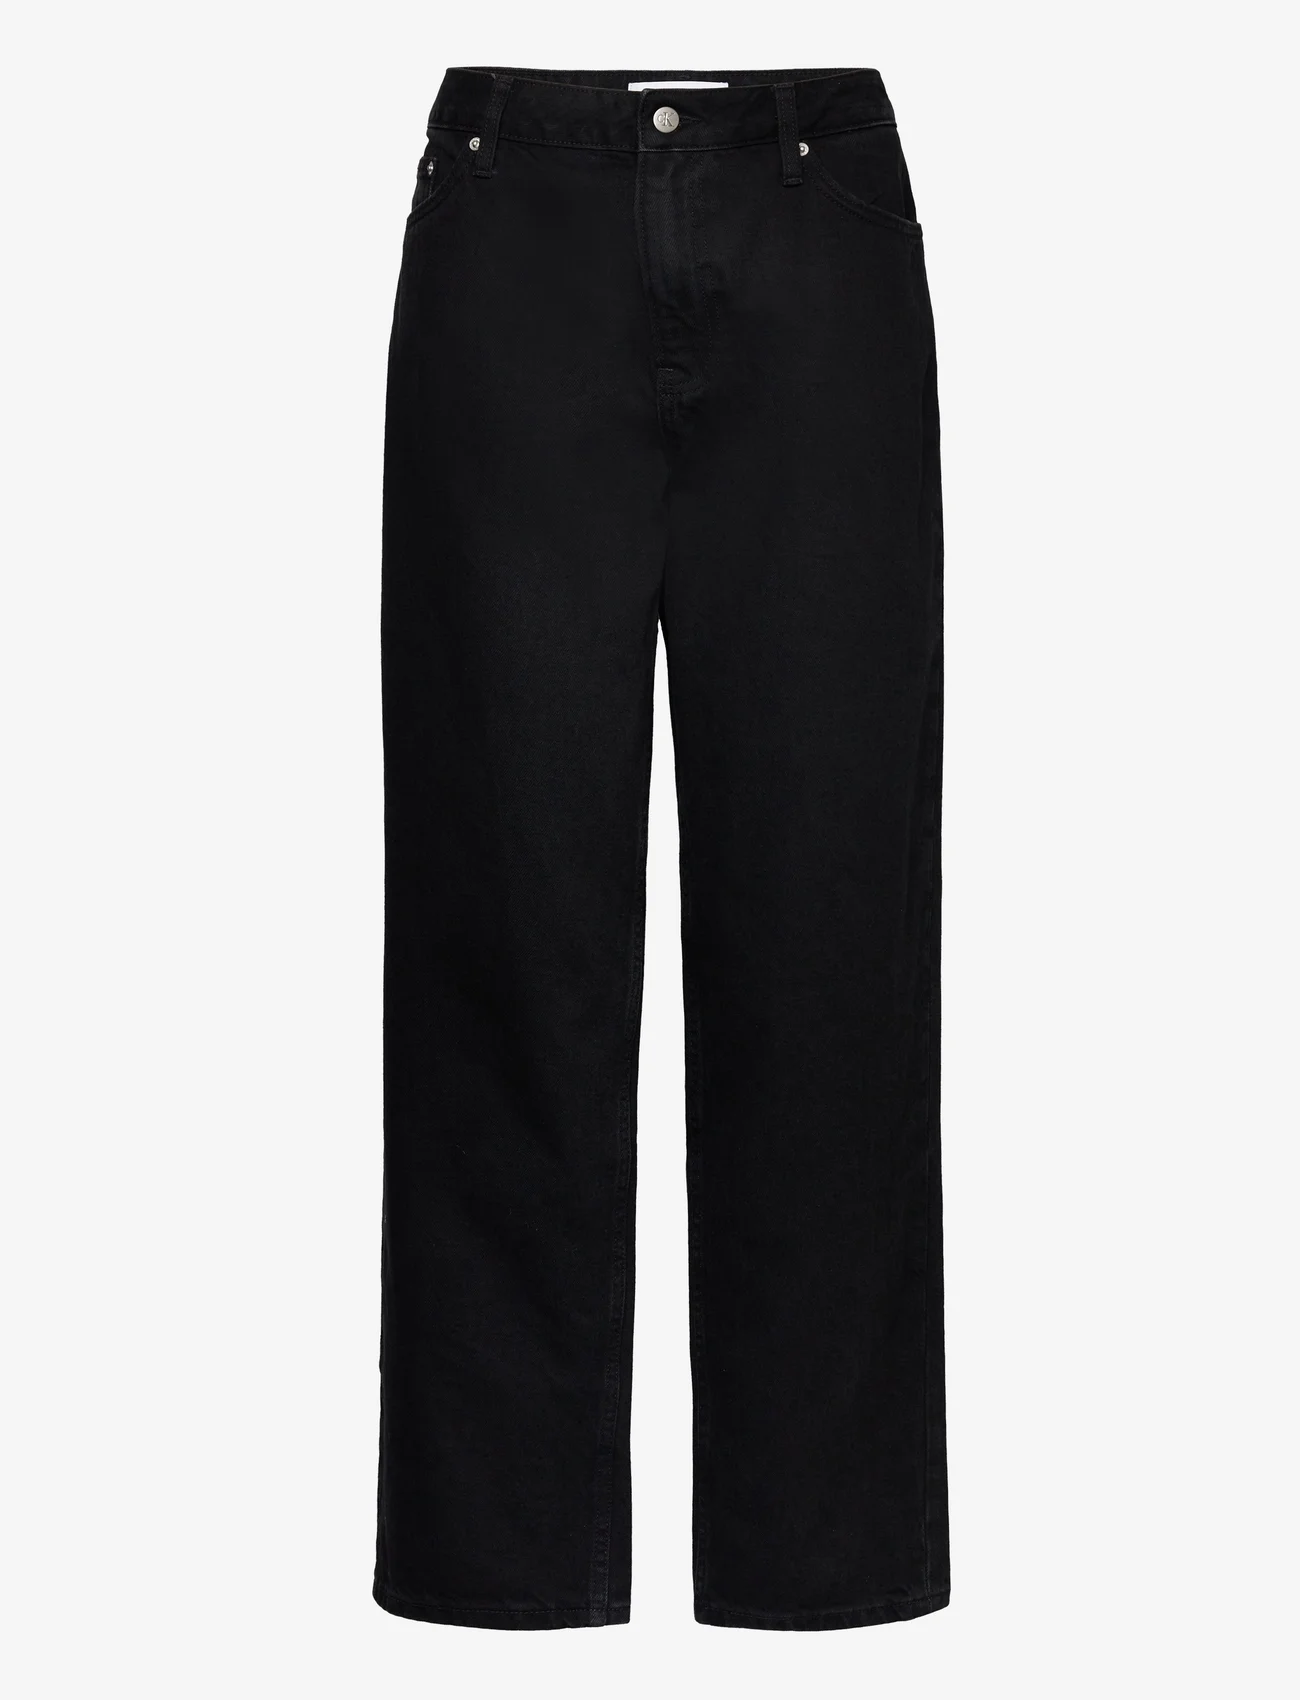 Calvin Klein Jeans - 90S STRAIGHT - sirge säärega teksad - denim black - 0